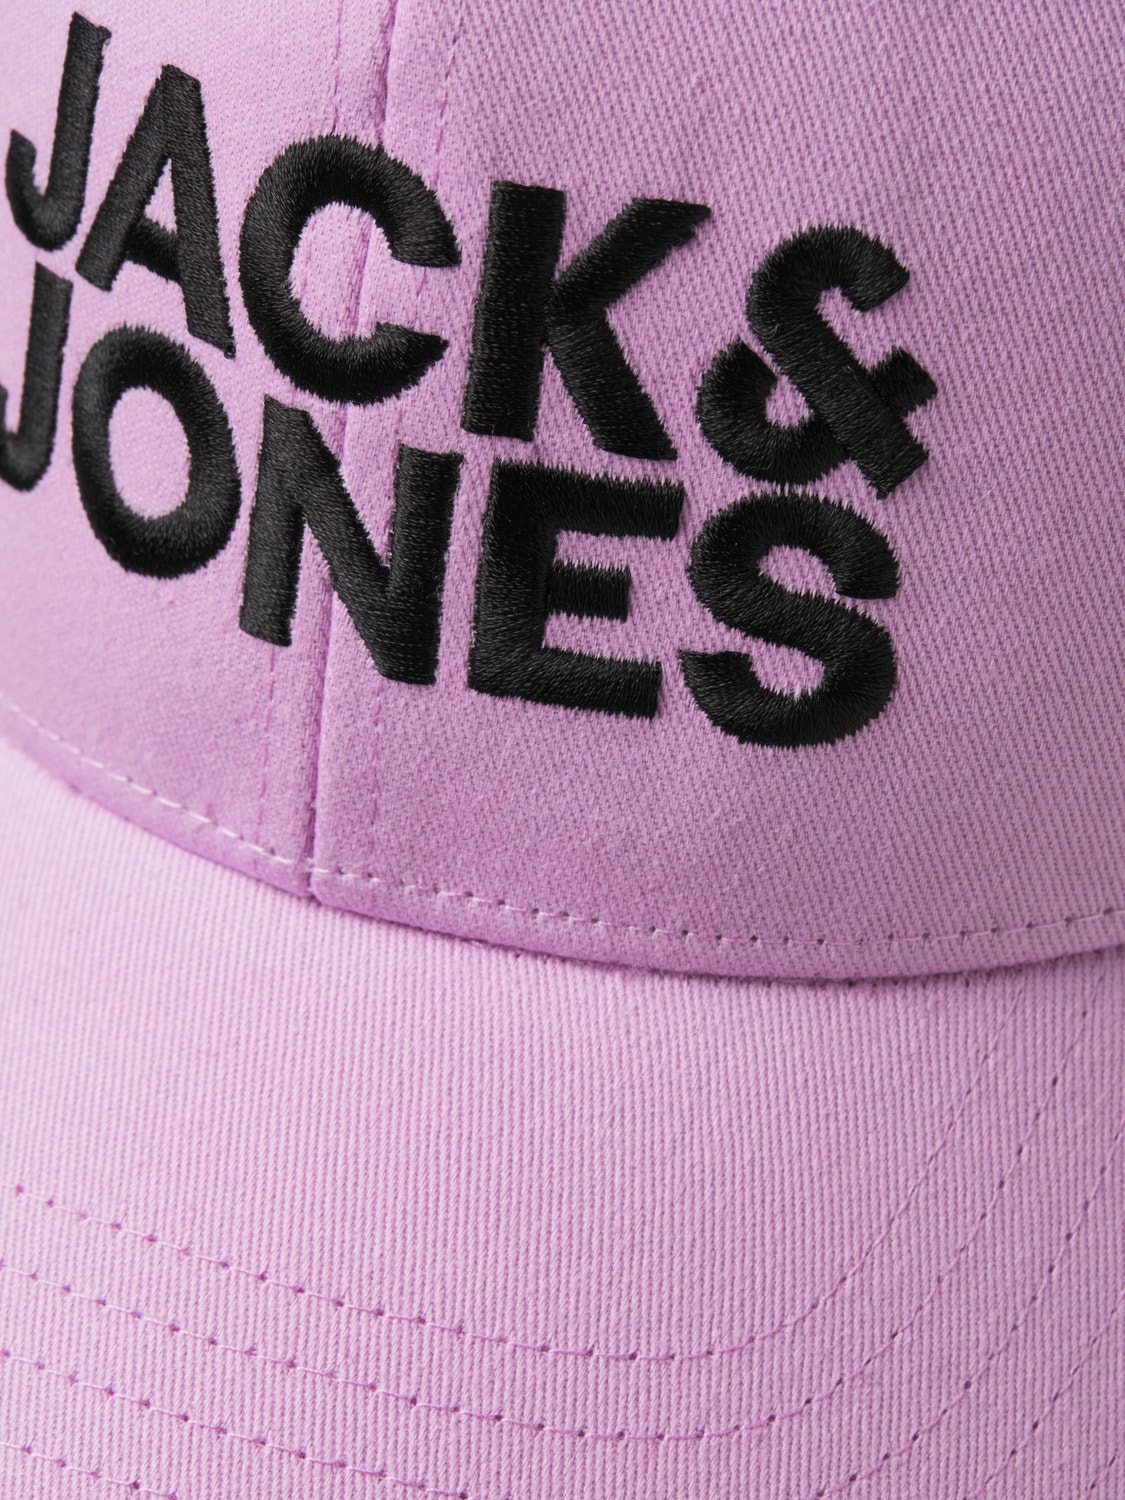 Jack & Jones Kšiltovka -Purple Rose - 12254296